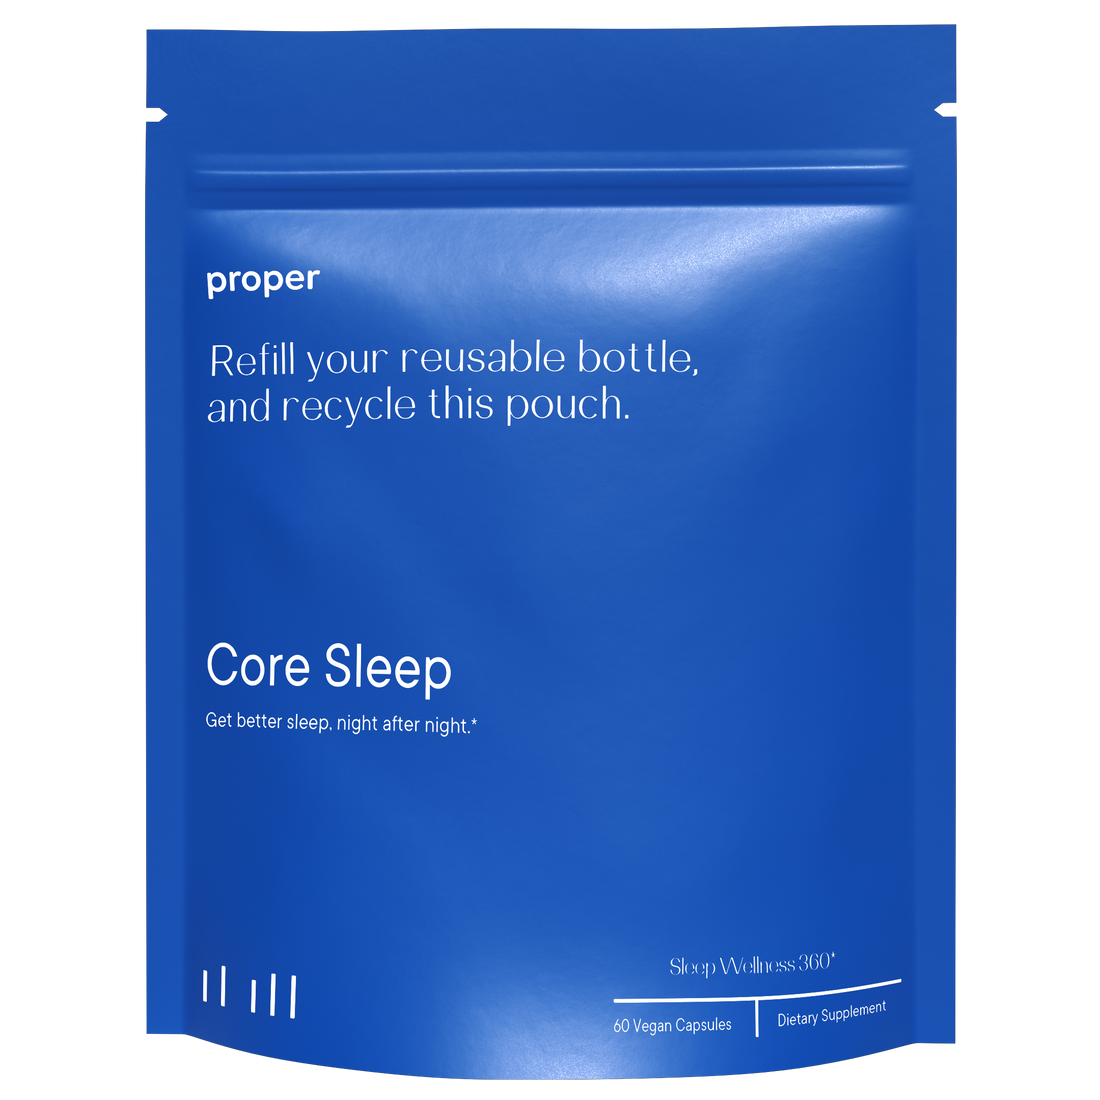 Core Sleep